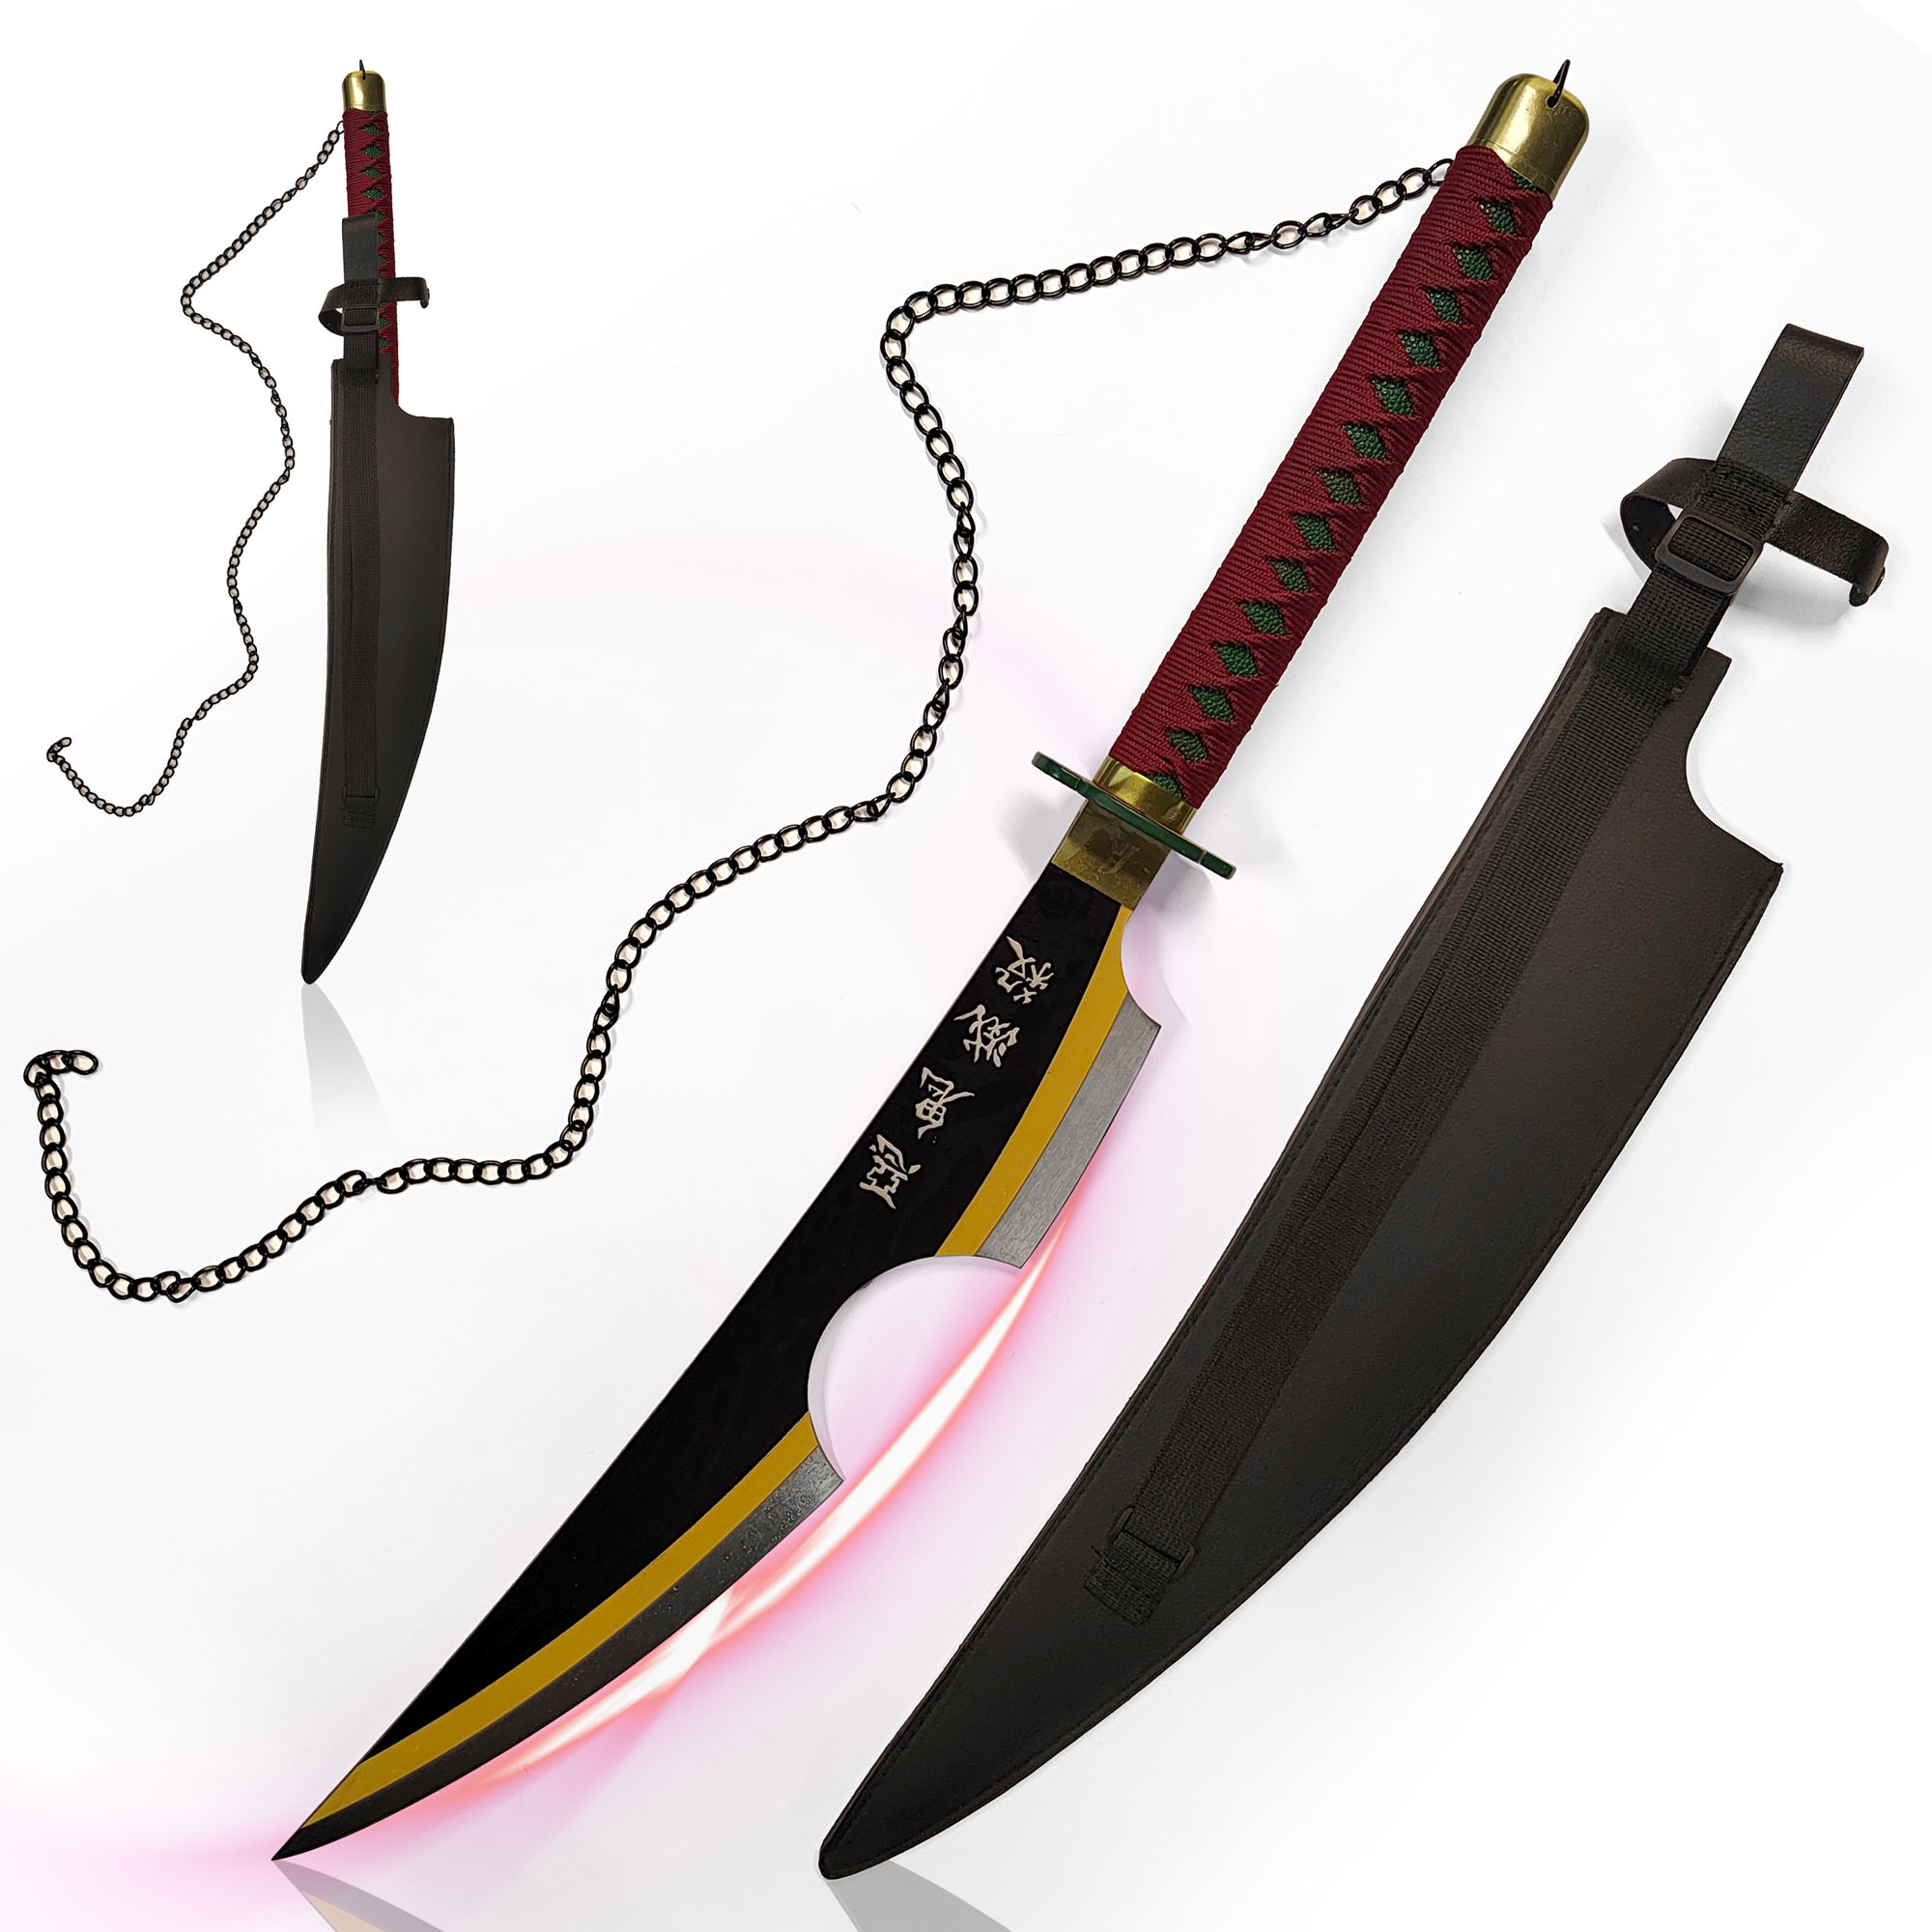 Demon Slayer: Kimetsu no Yaiba - Tengen Uzui Sword